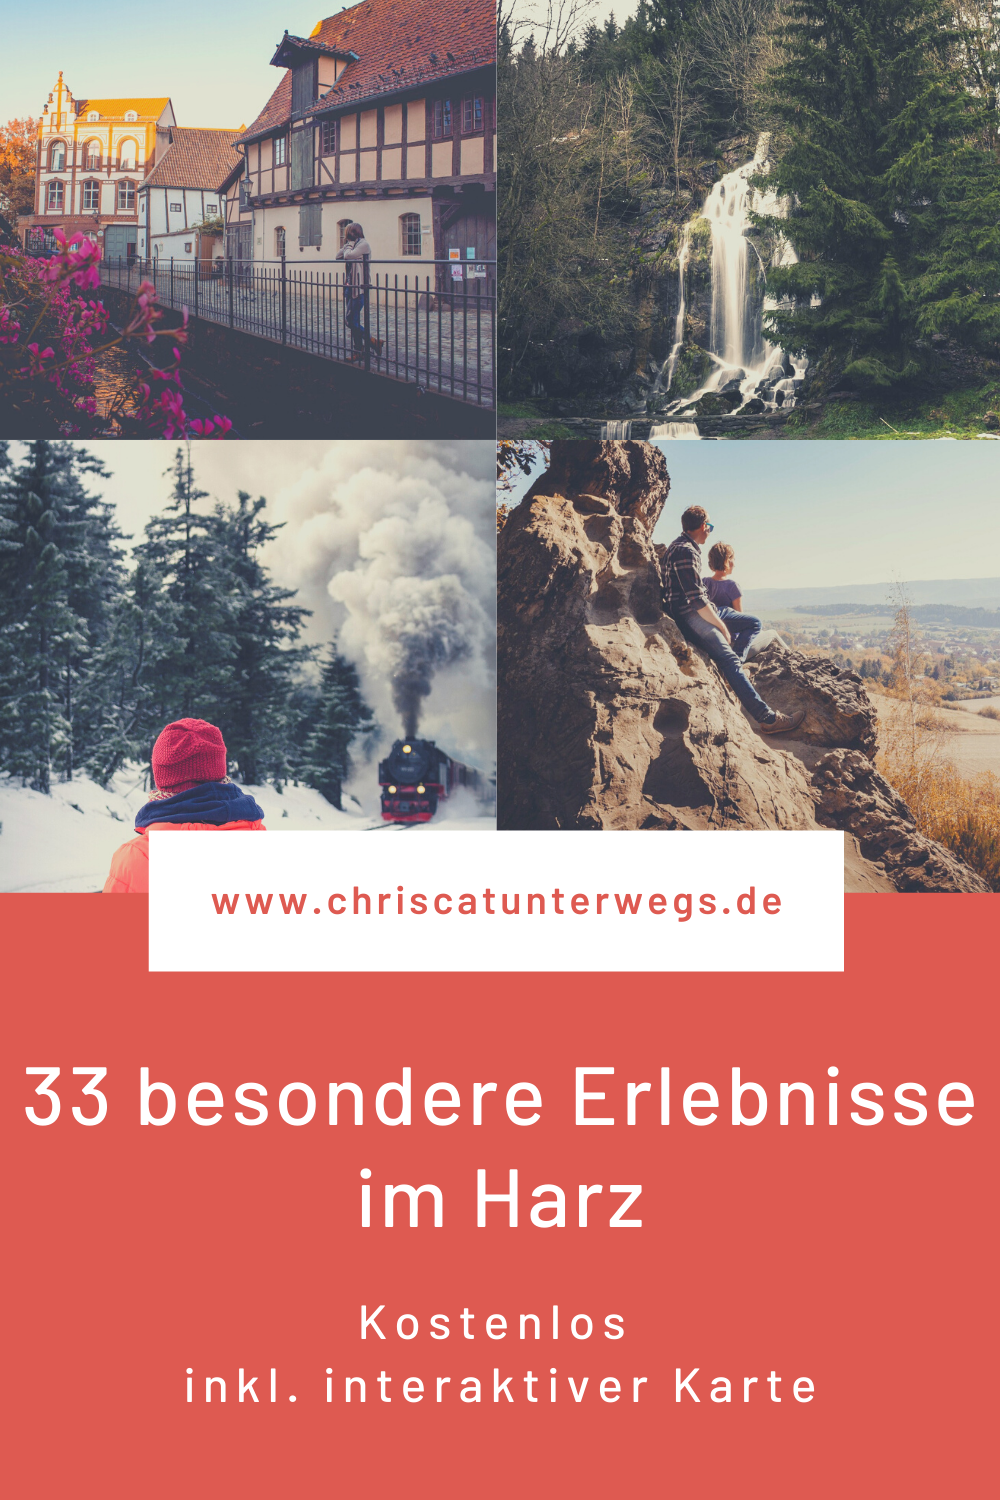 33 besondere Erlebnisse im Harz